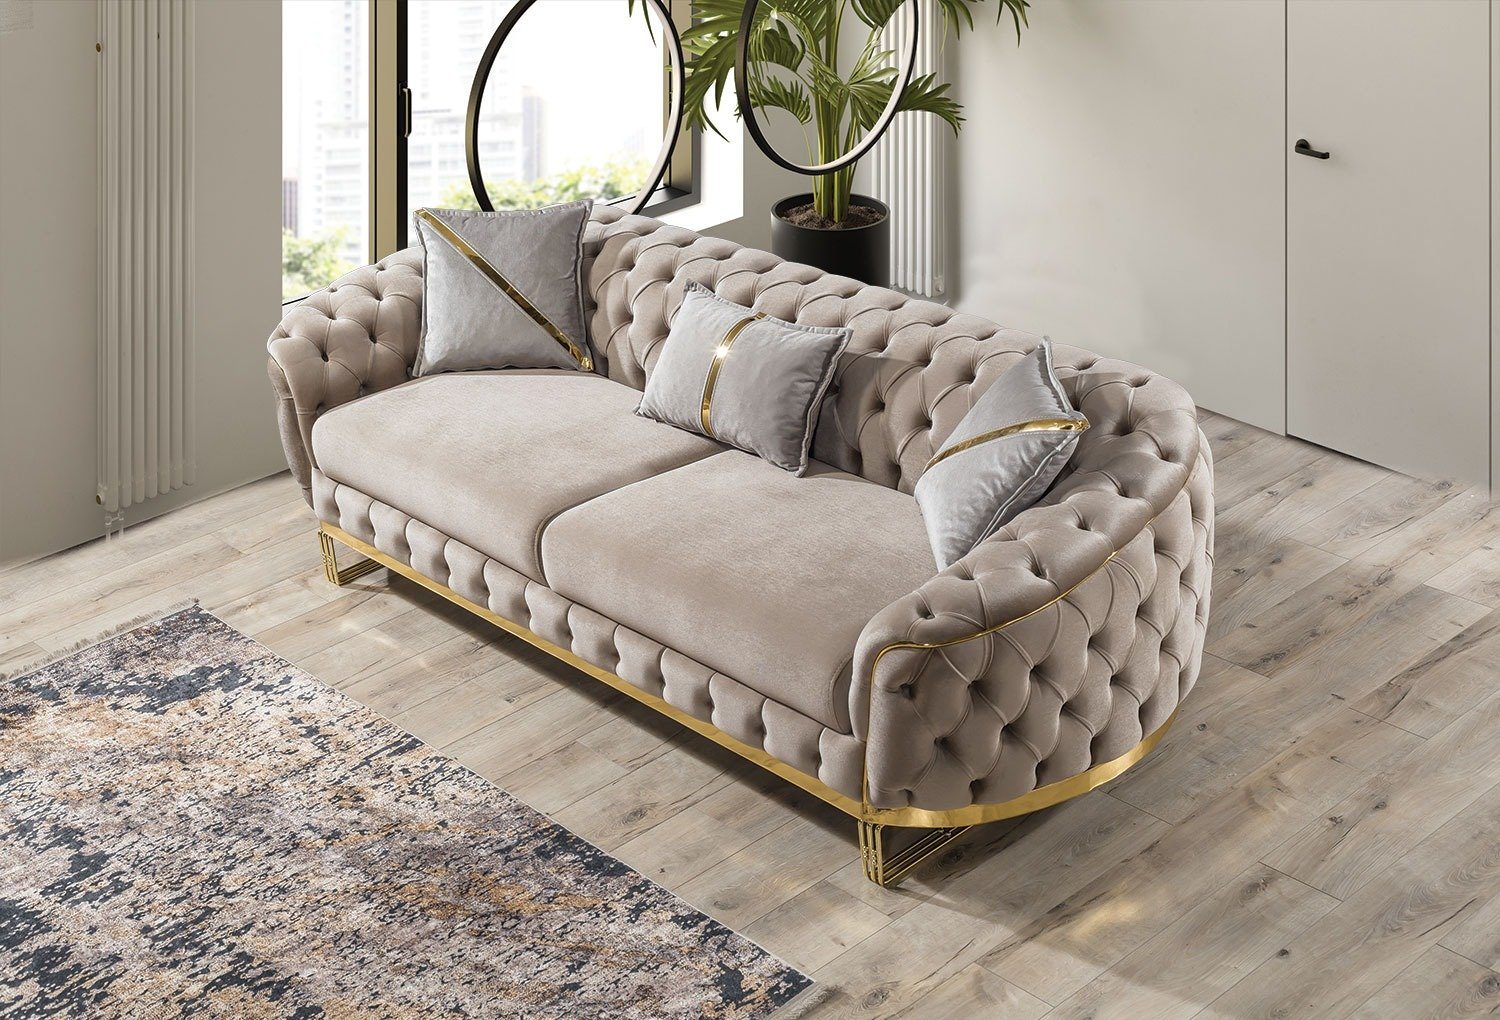 2-Sitzer, Villa Fairy, Turkey, Beige in Möbel handgefertigt Sofa Stk. Made Quality 1